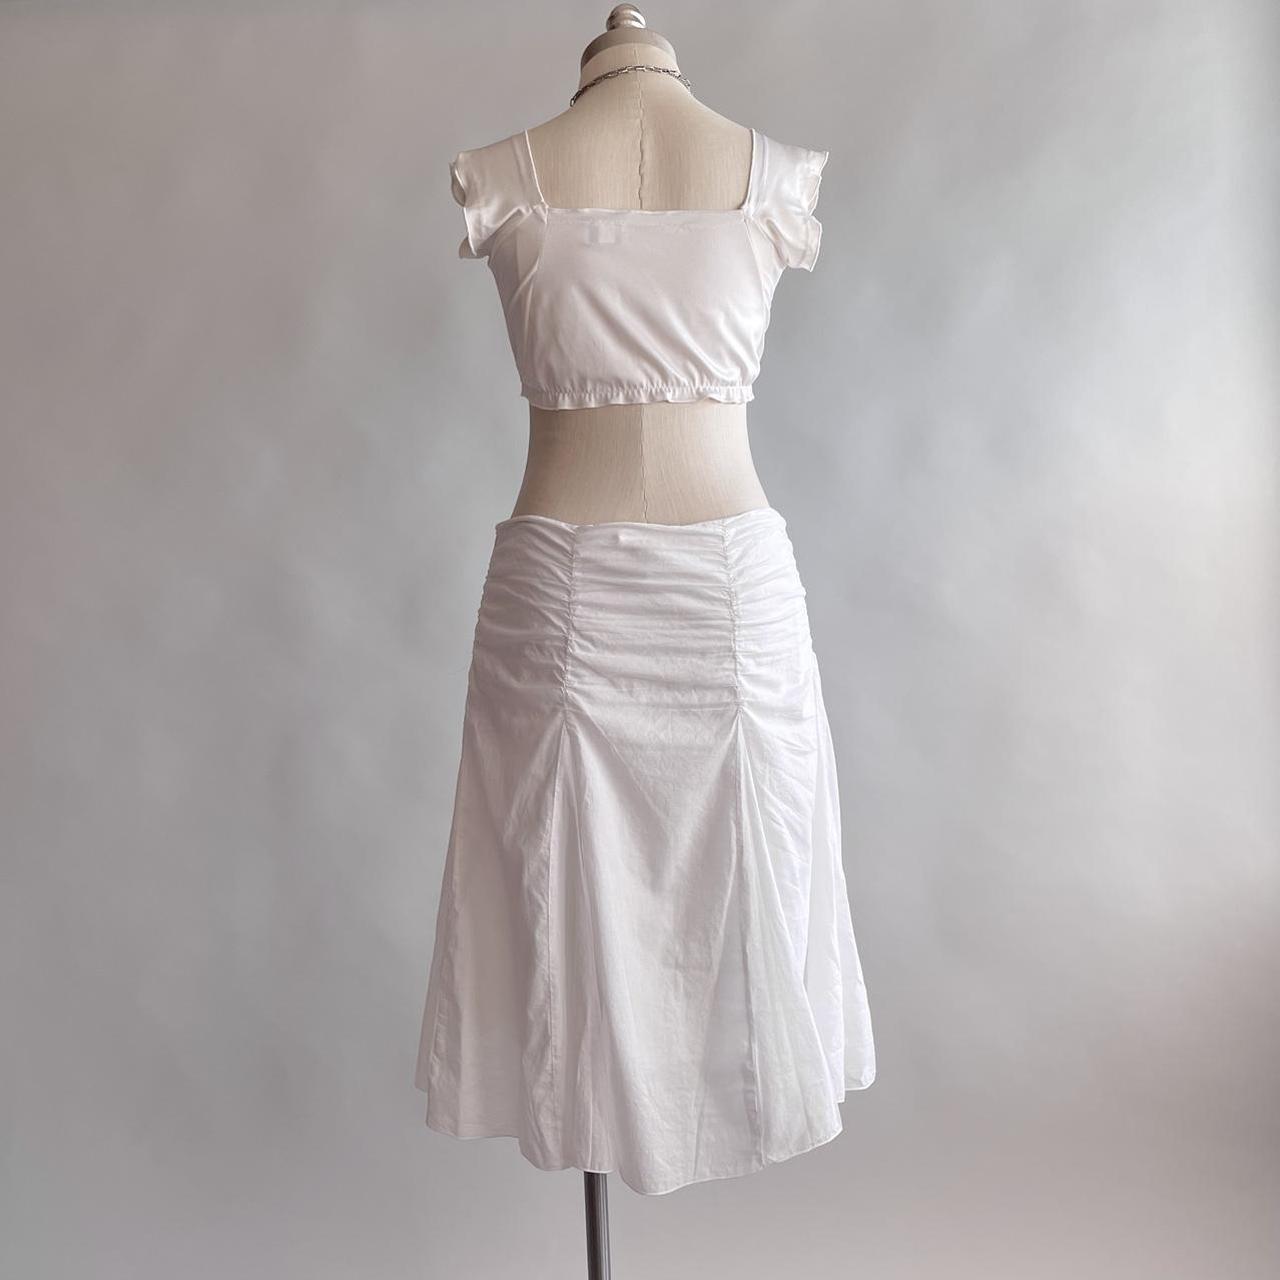 Forever 21 Women's White Skirt | Depop